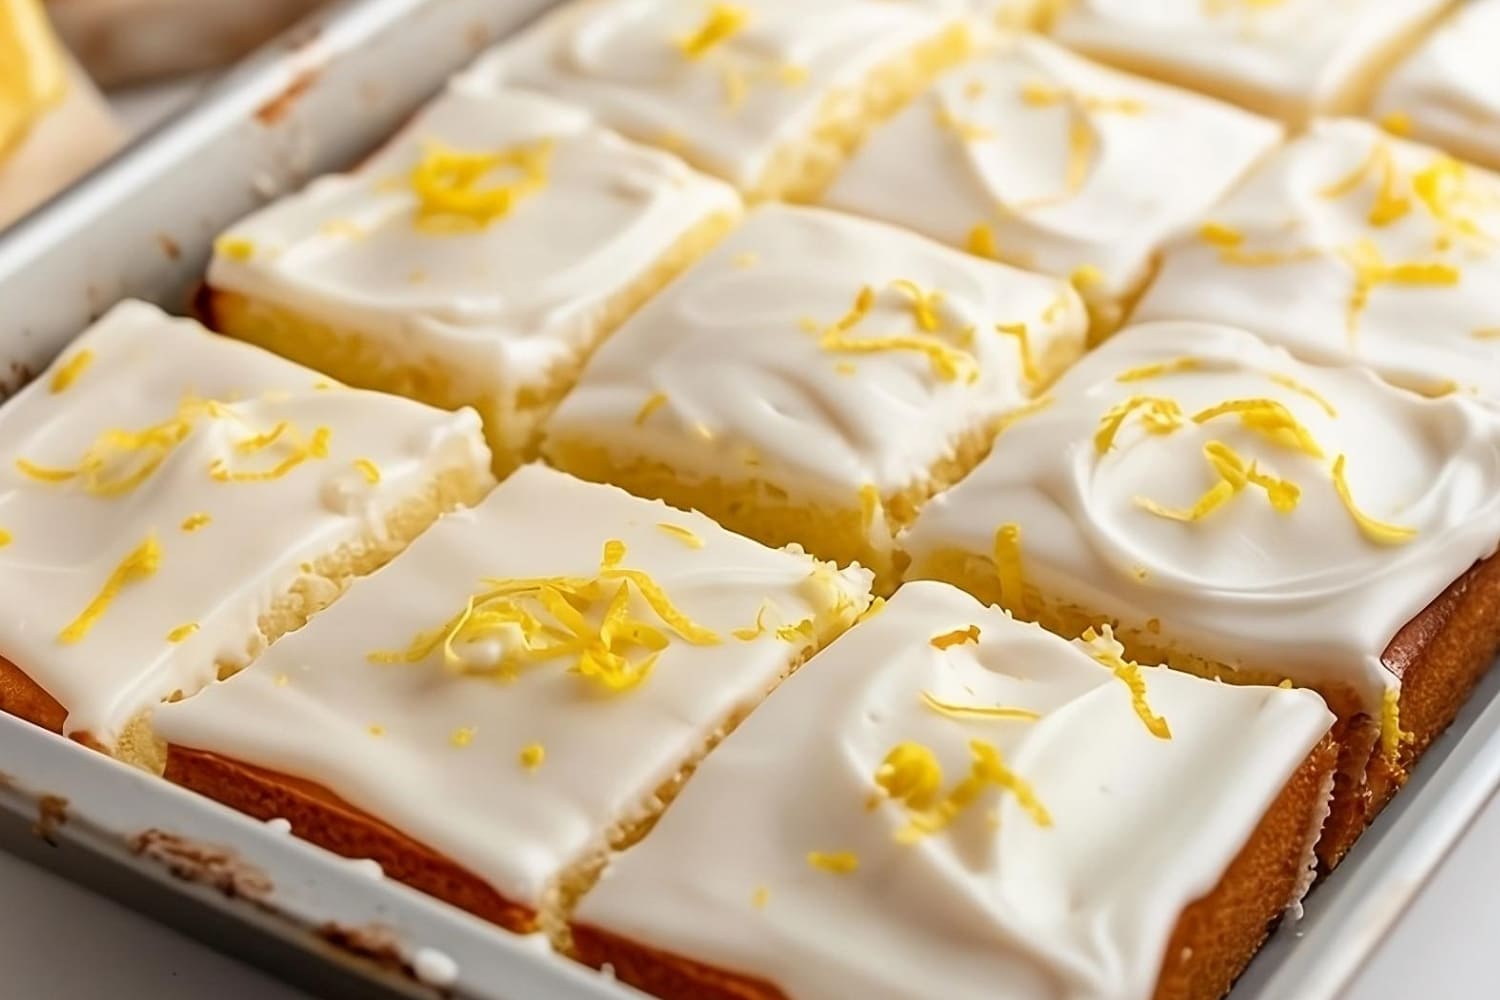 Sliced lemon sheet cake with sugar glaze and lemon zest garnish on top.